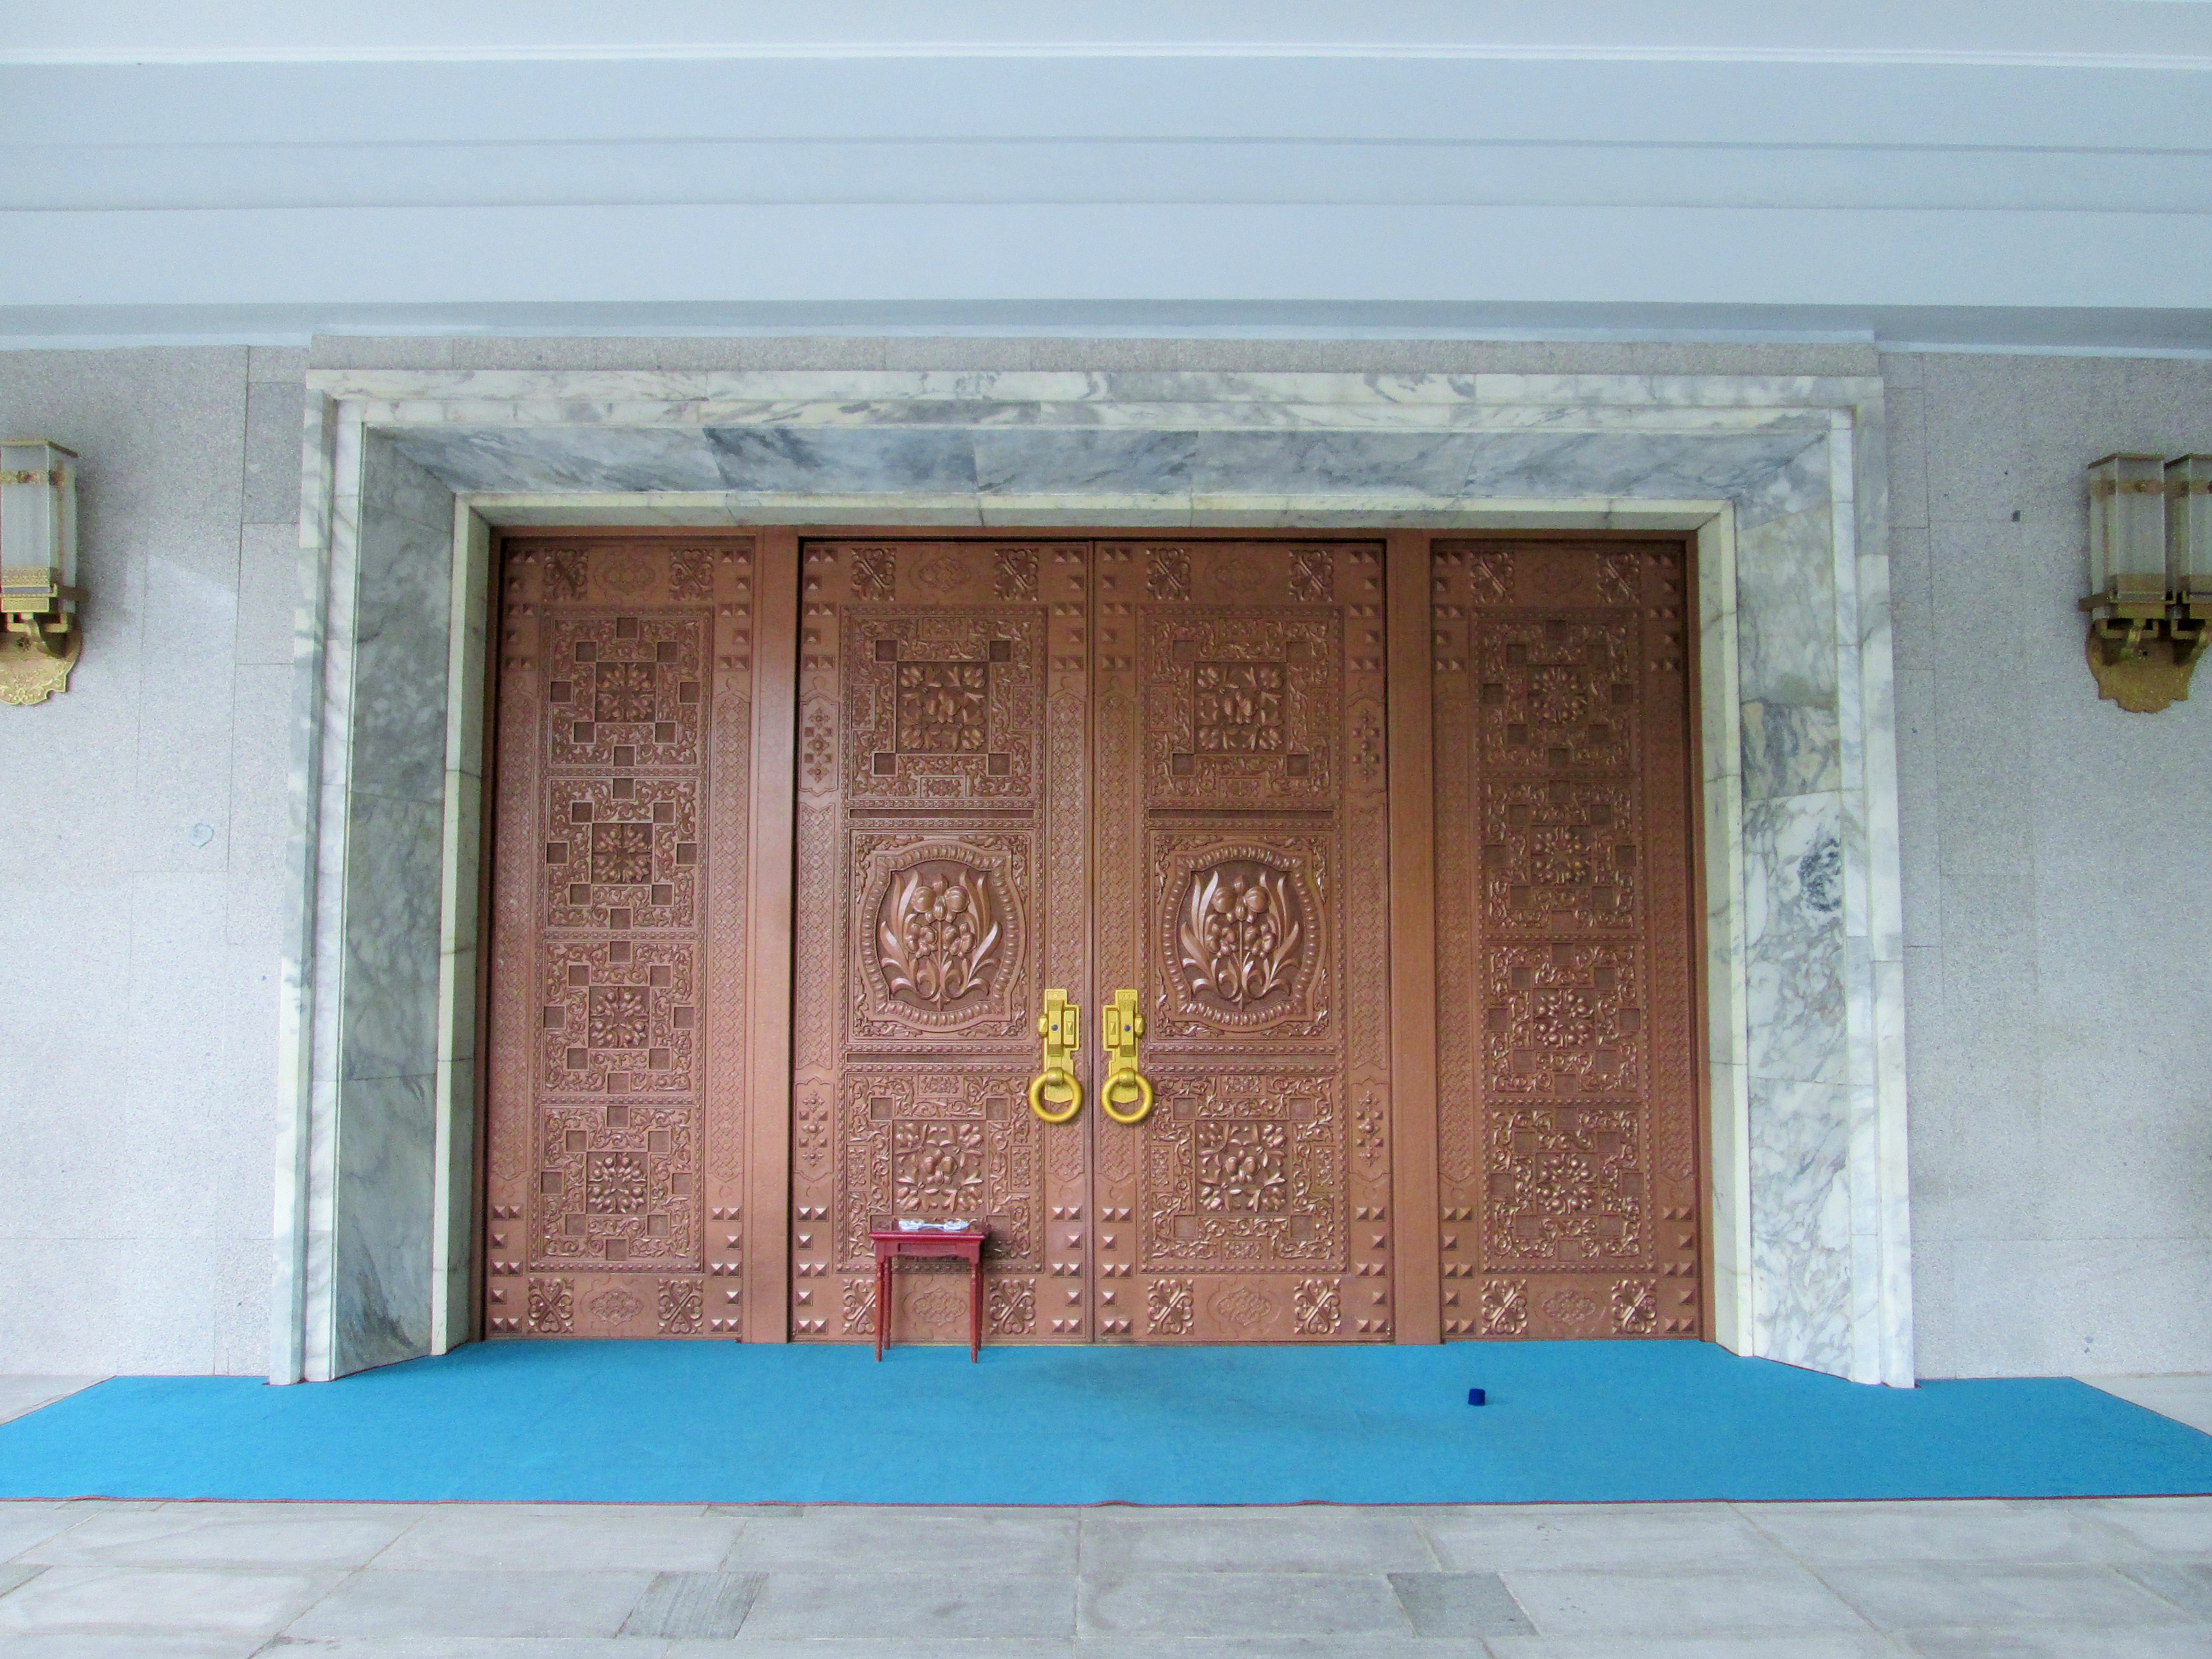 Eine riesige Bronzetür, welche zur Nordkoreanischen Freundschaftsausstellung führt.